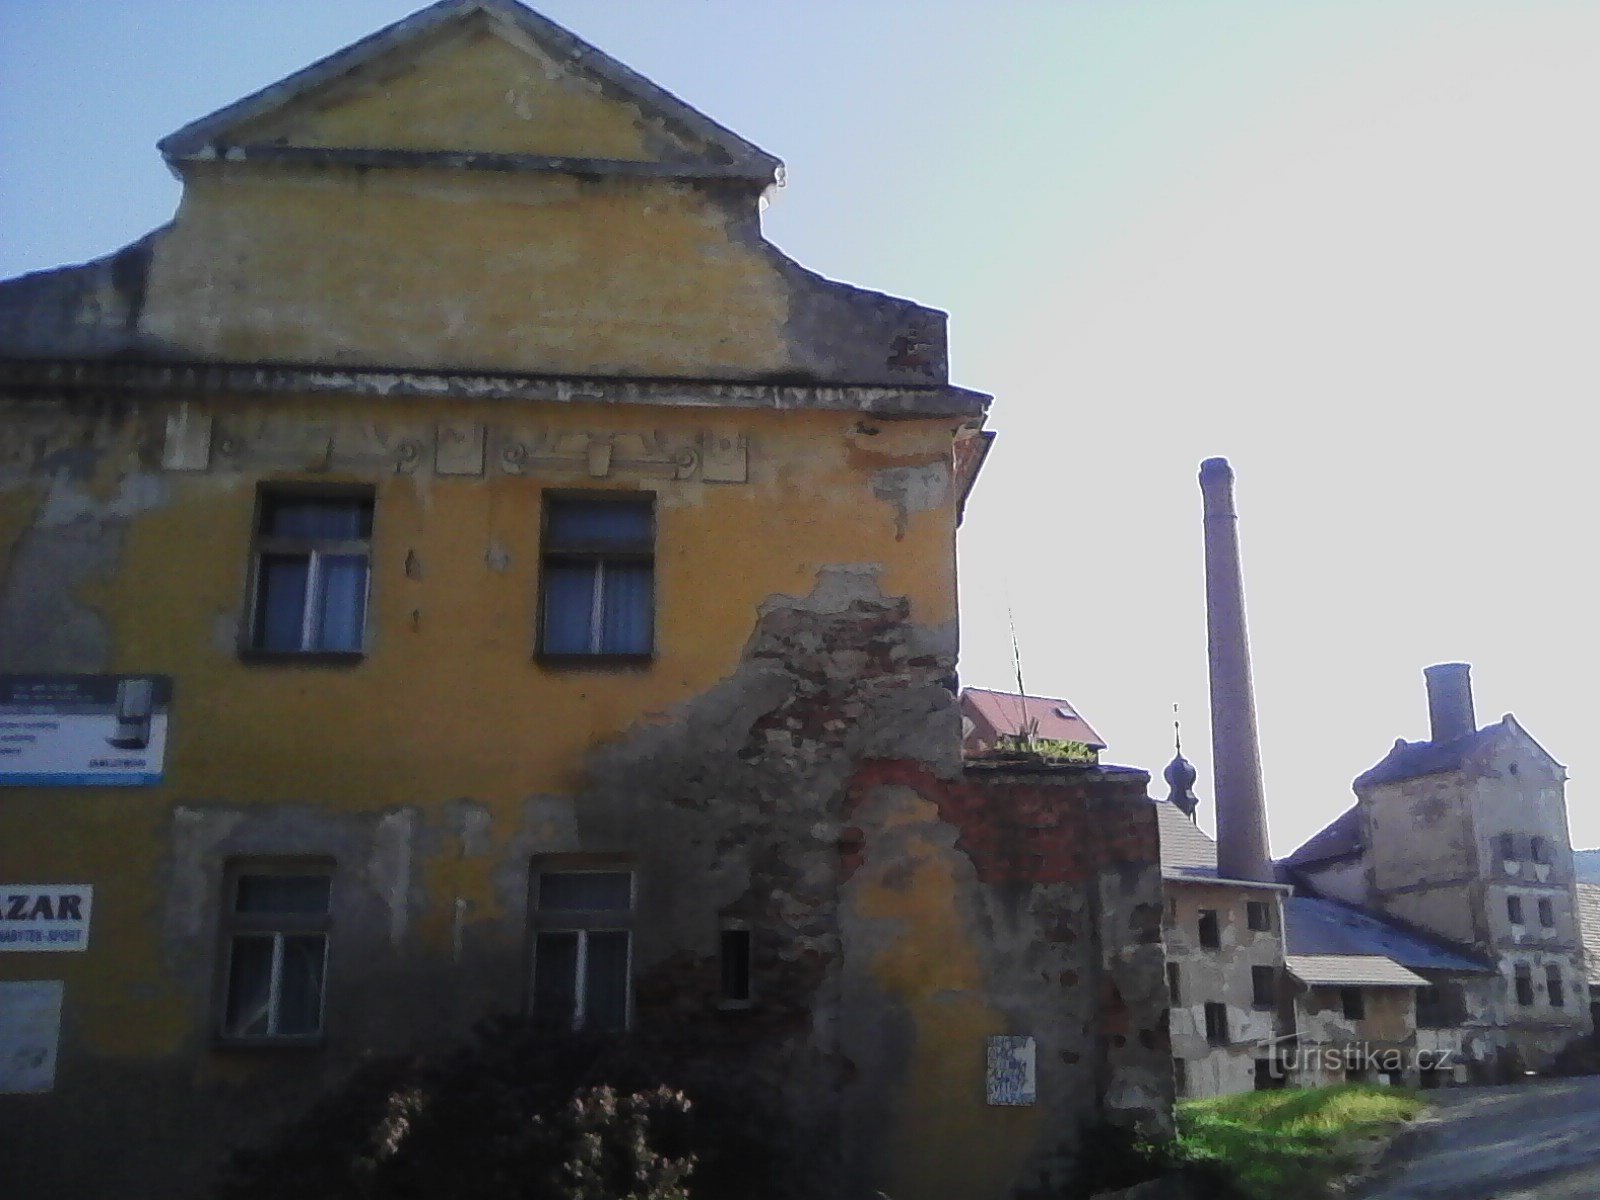 2. Stary zamek Votice. Twierdza z XV wieku, pierwsza wzmianka w 15 roku. Zamek pozostaje